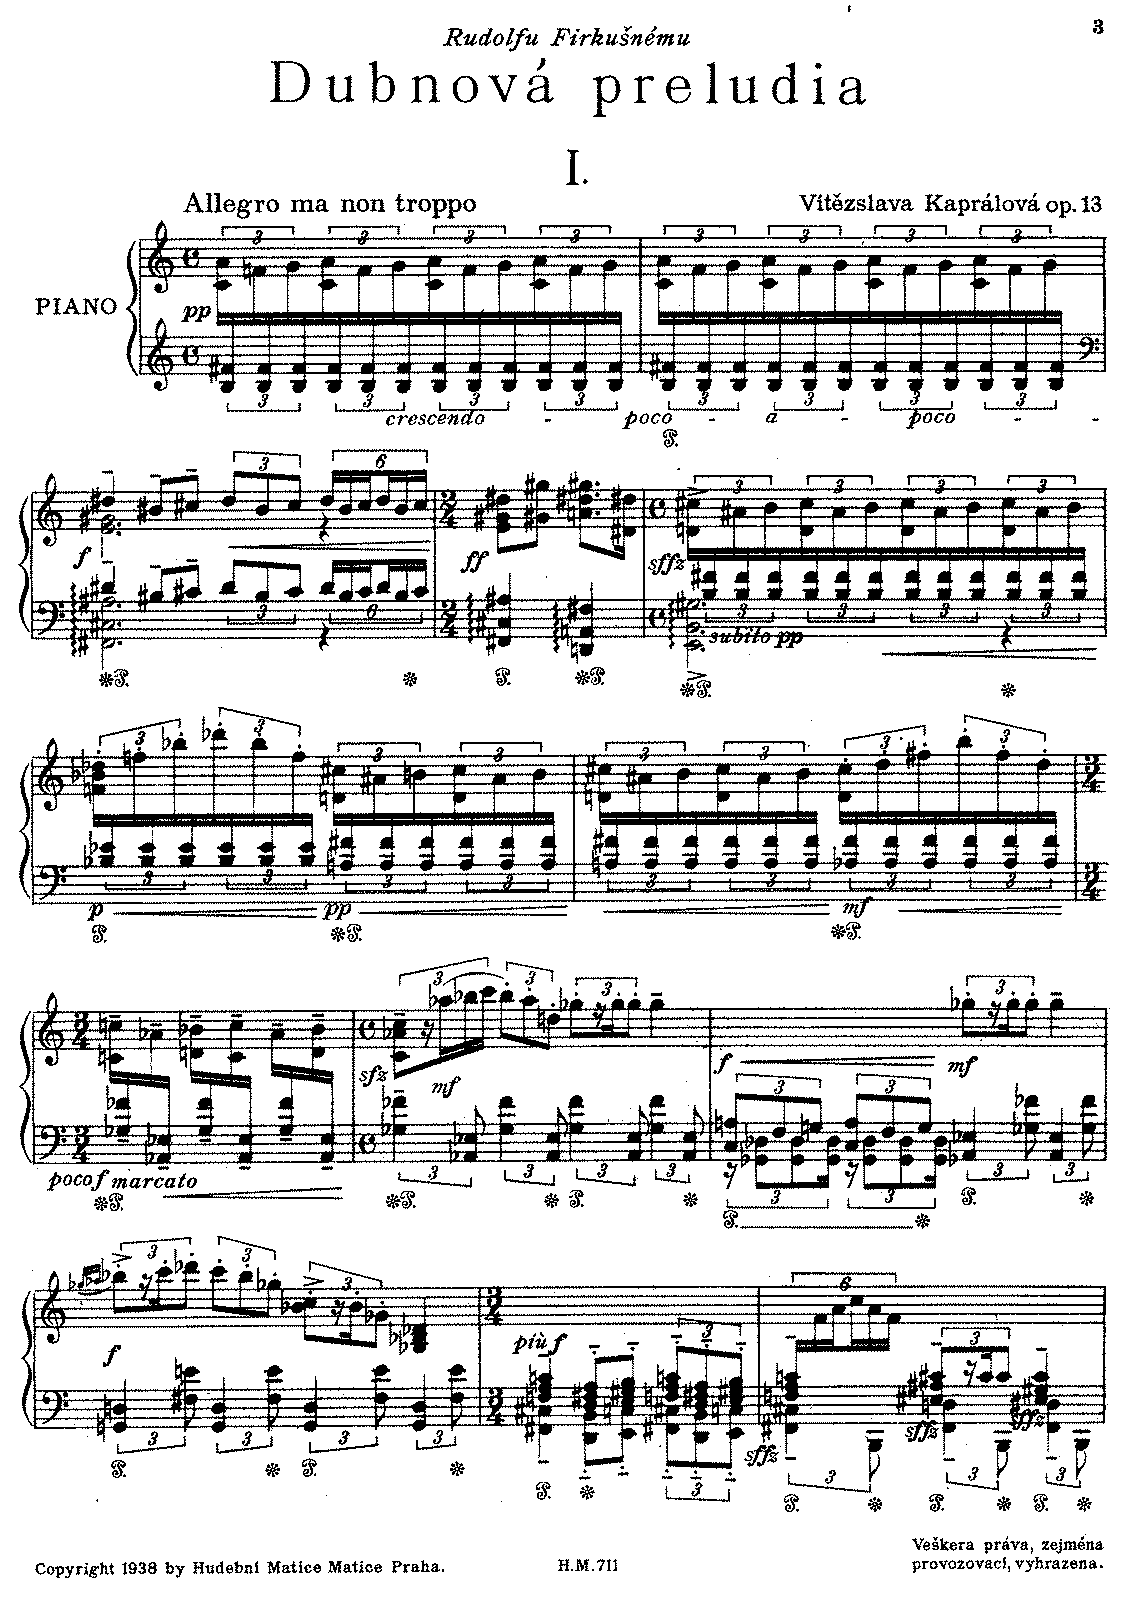 Dubnová preludia, Op.13 (Kaprálová, Vítězslava) - IMSLP